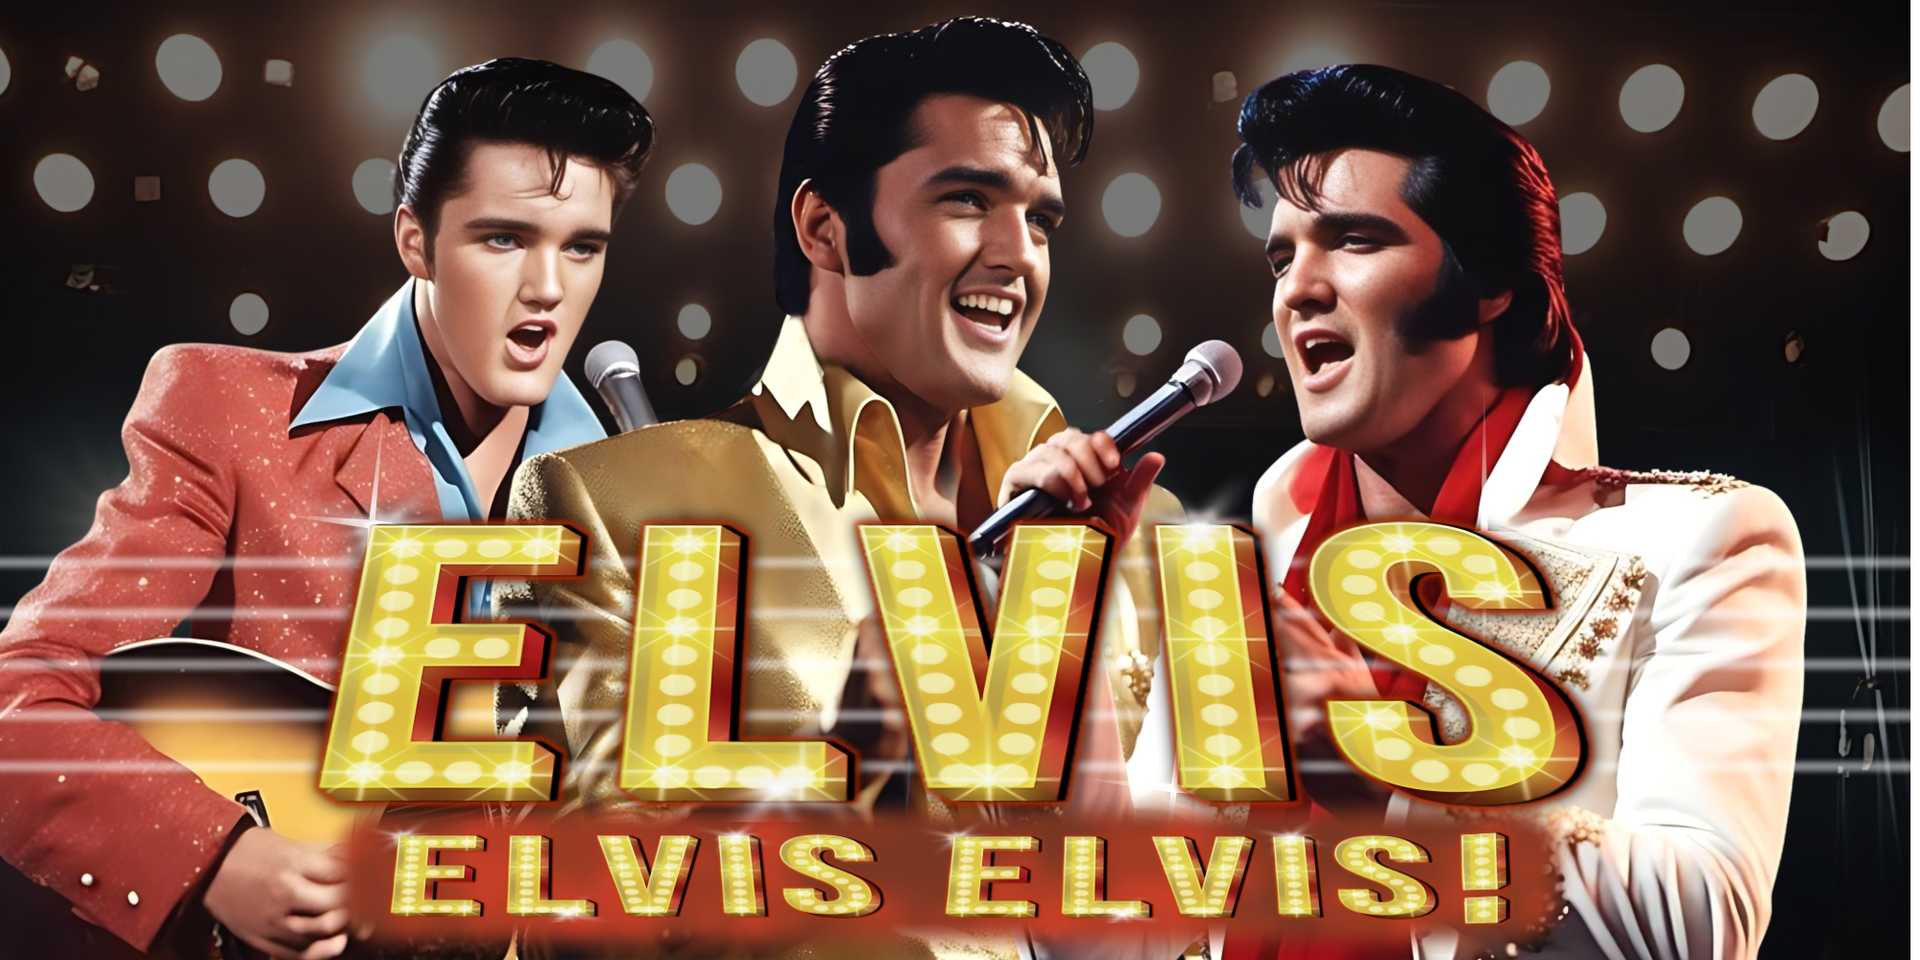 Elvis, Elvis, Elvis!